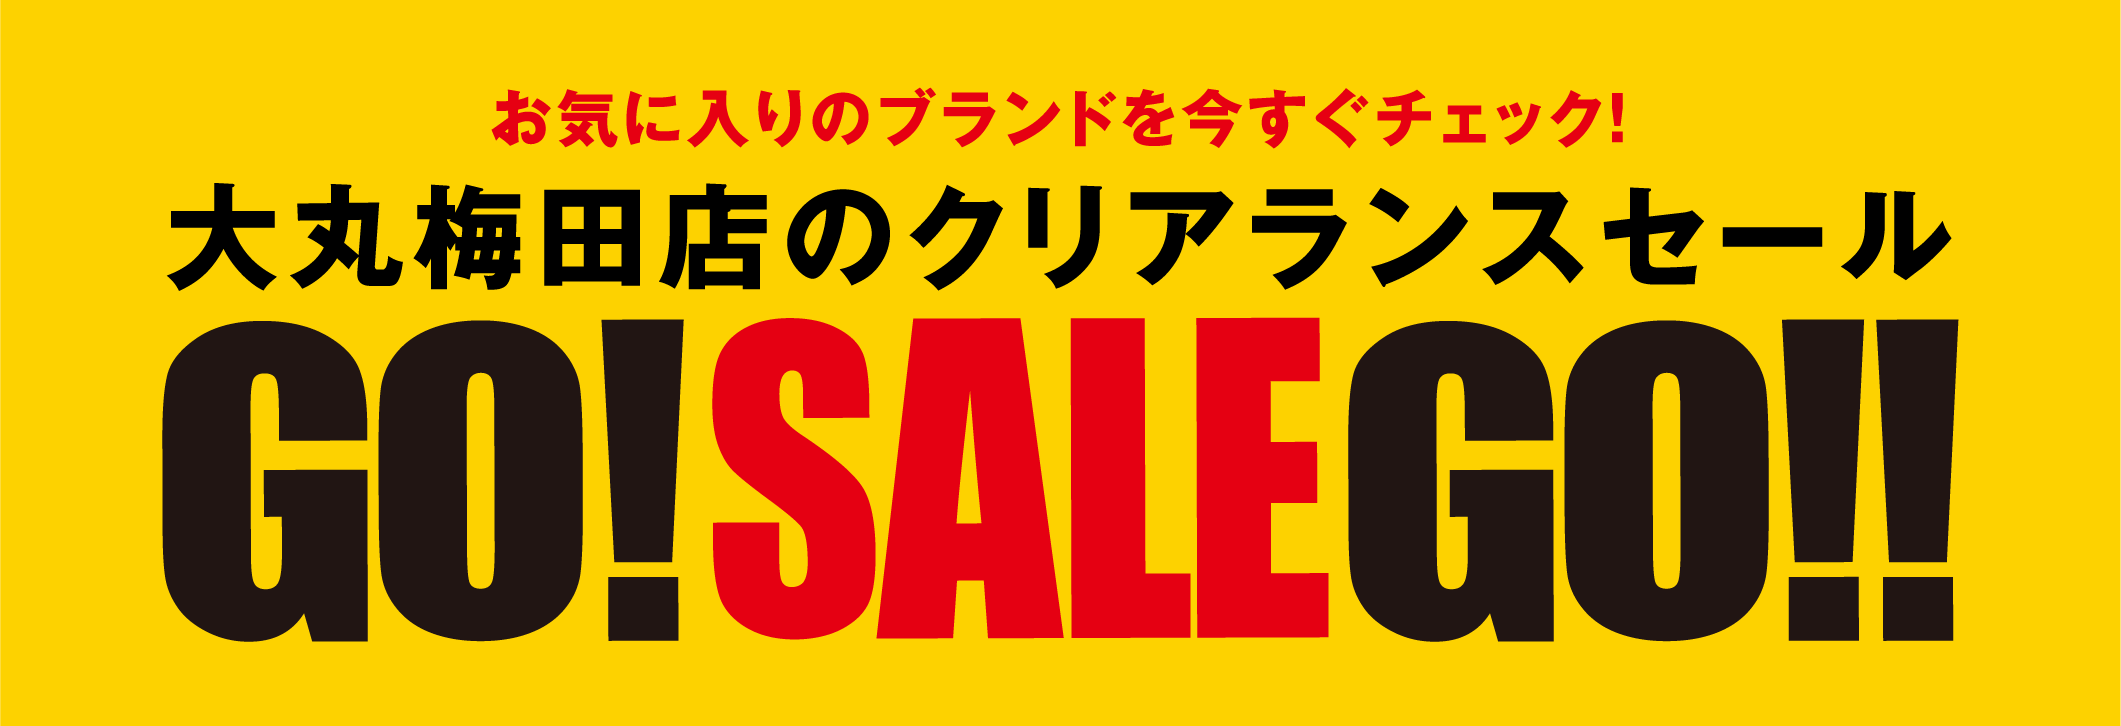 大丸梅田店のクリアランスセール GO!SALE!GO!